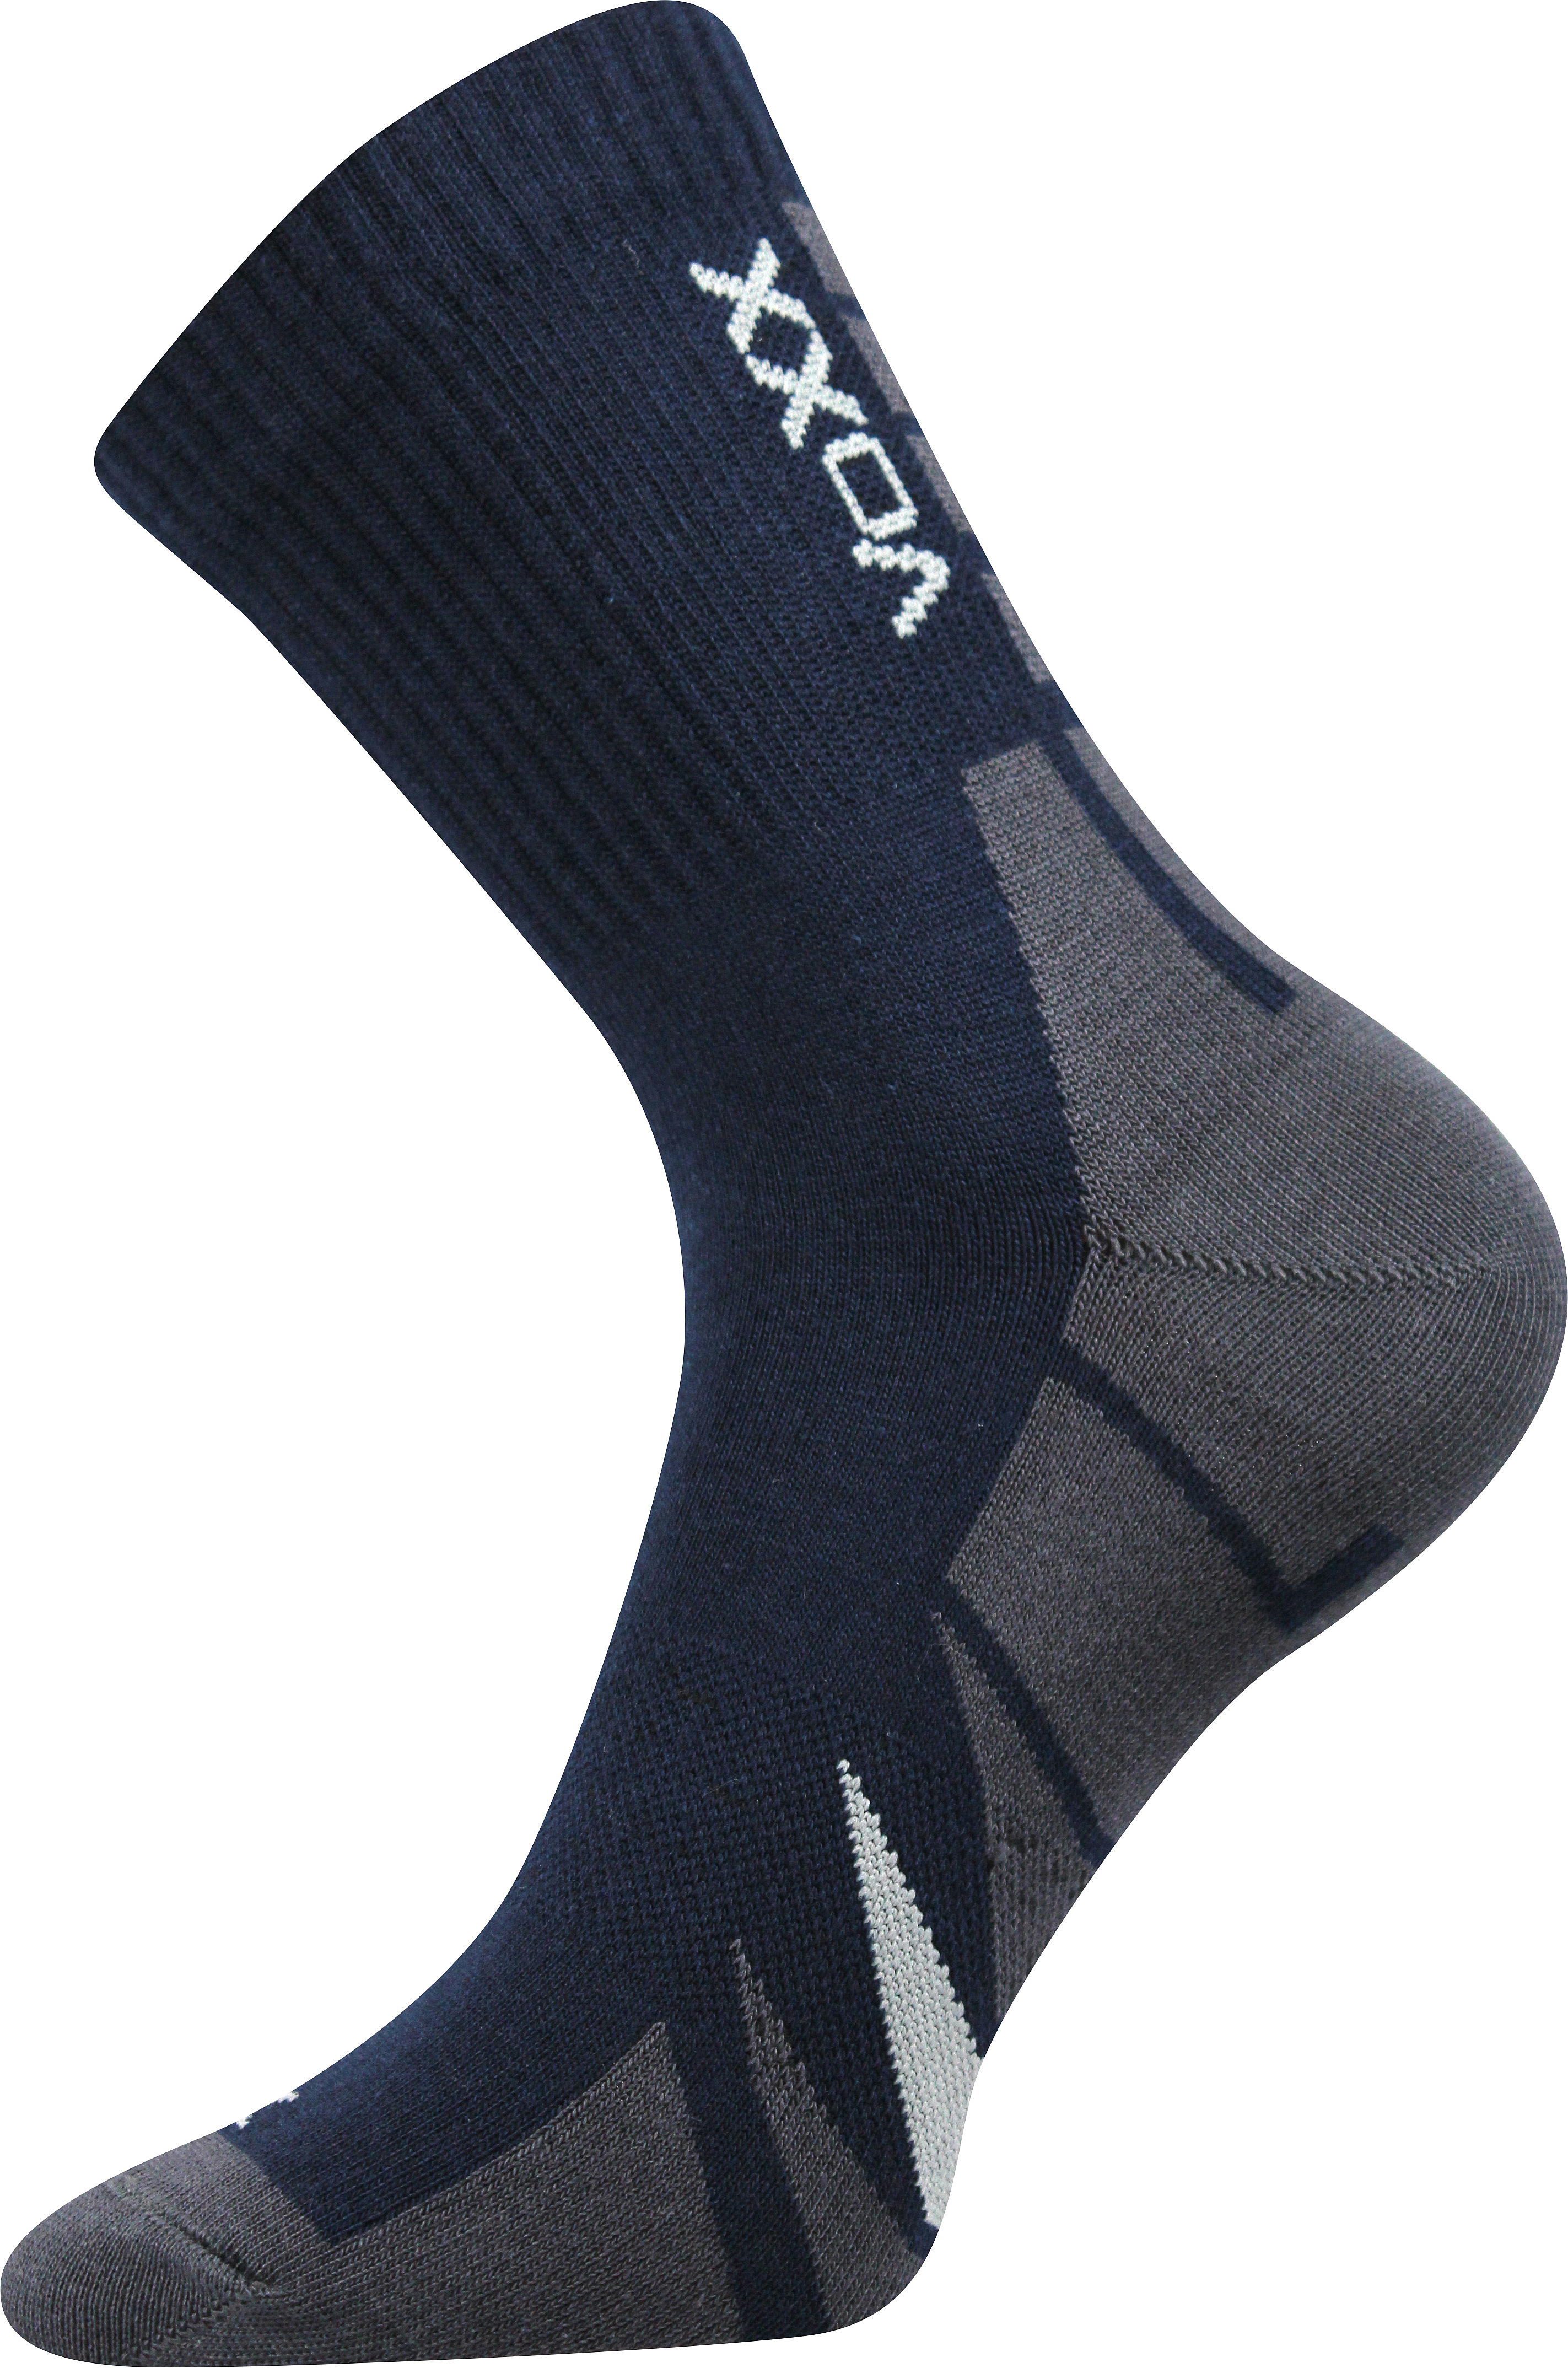 Ponožky sportovní Voxx Hermes - navy, 47-50